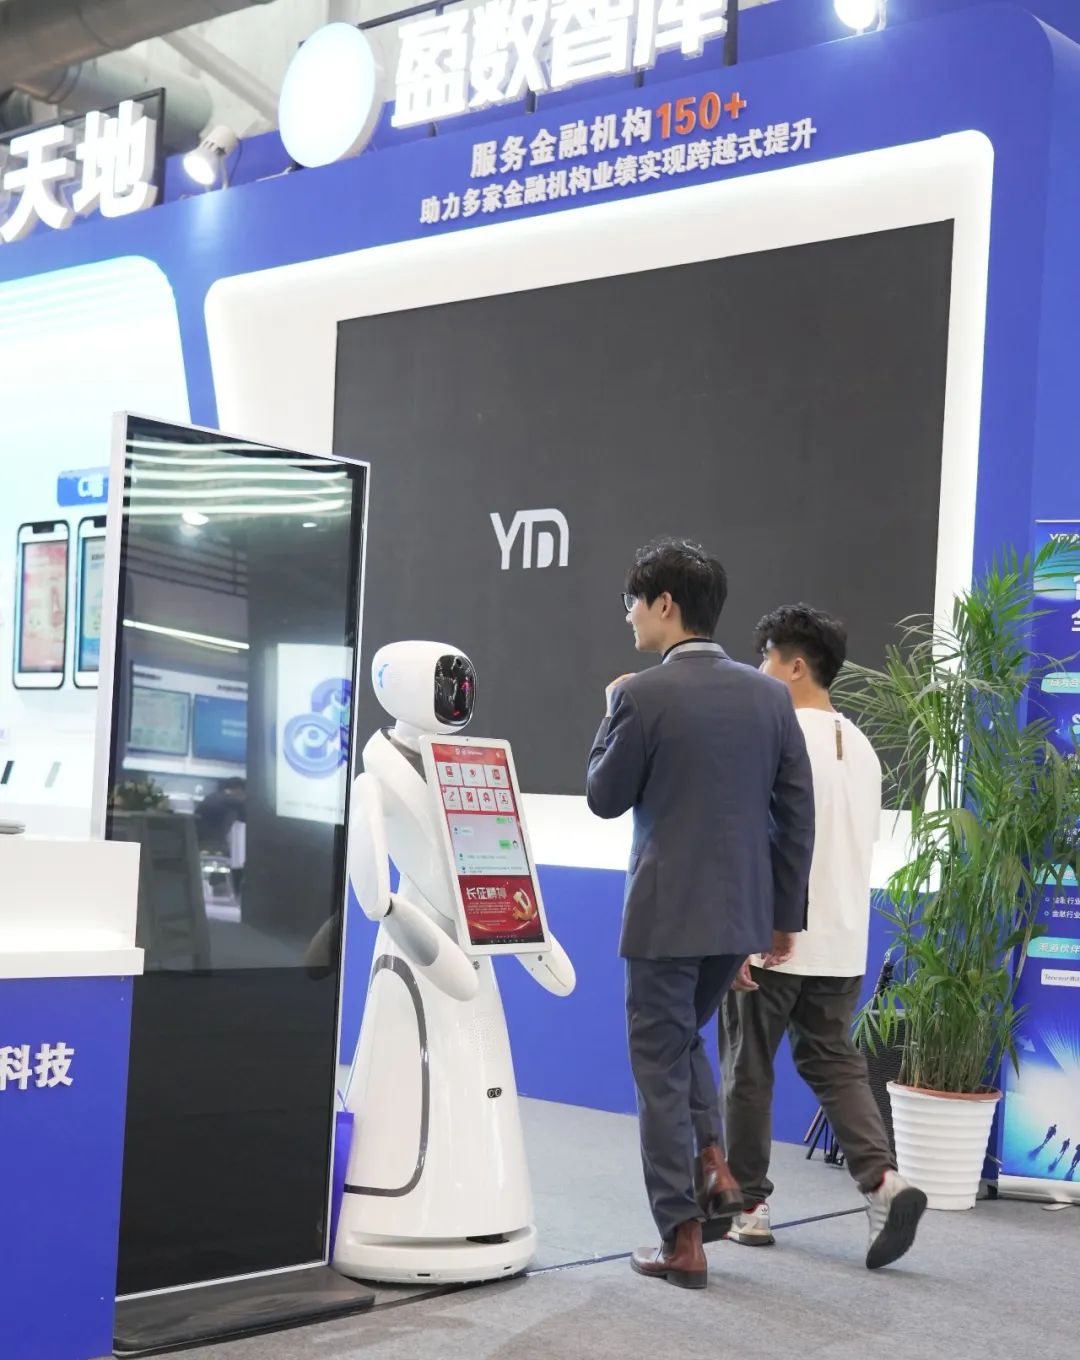 Robot Perkhidmatan AI Amy membantu Ekspo Aplikasi Kewangan Digital Suzhou 2023, Menunjukkan kekuatan teknologi terkemuka global.